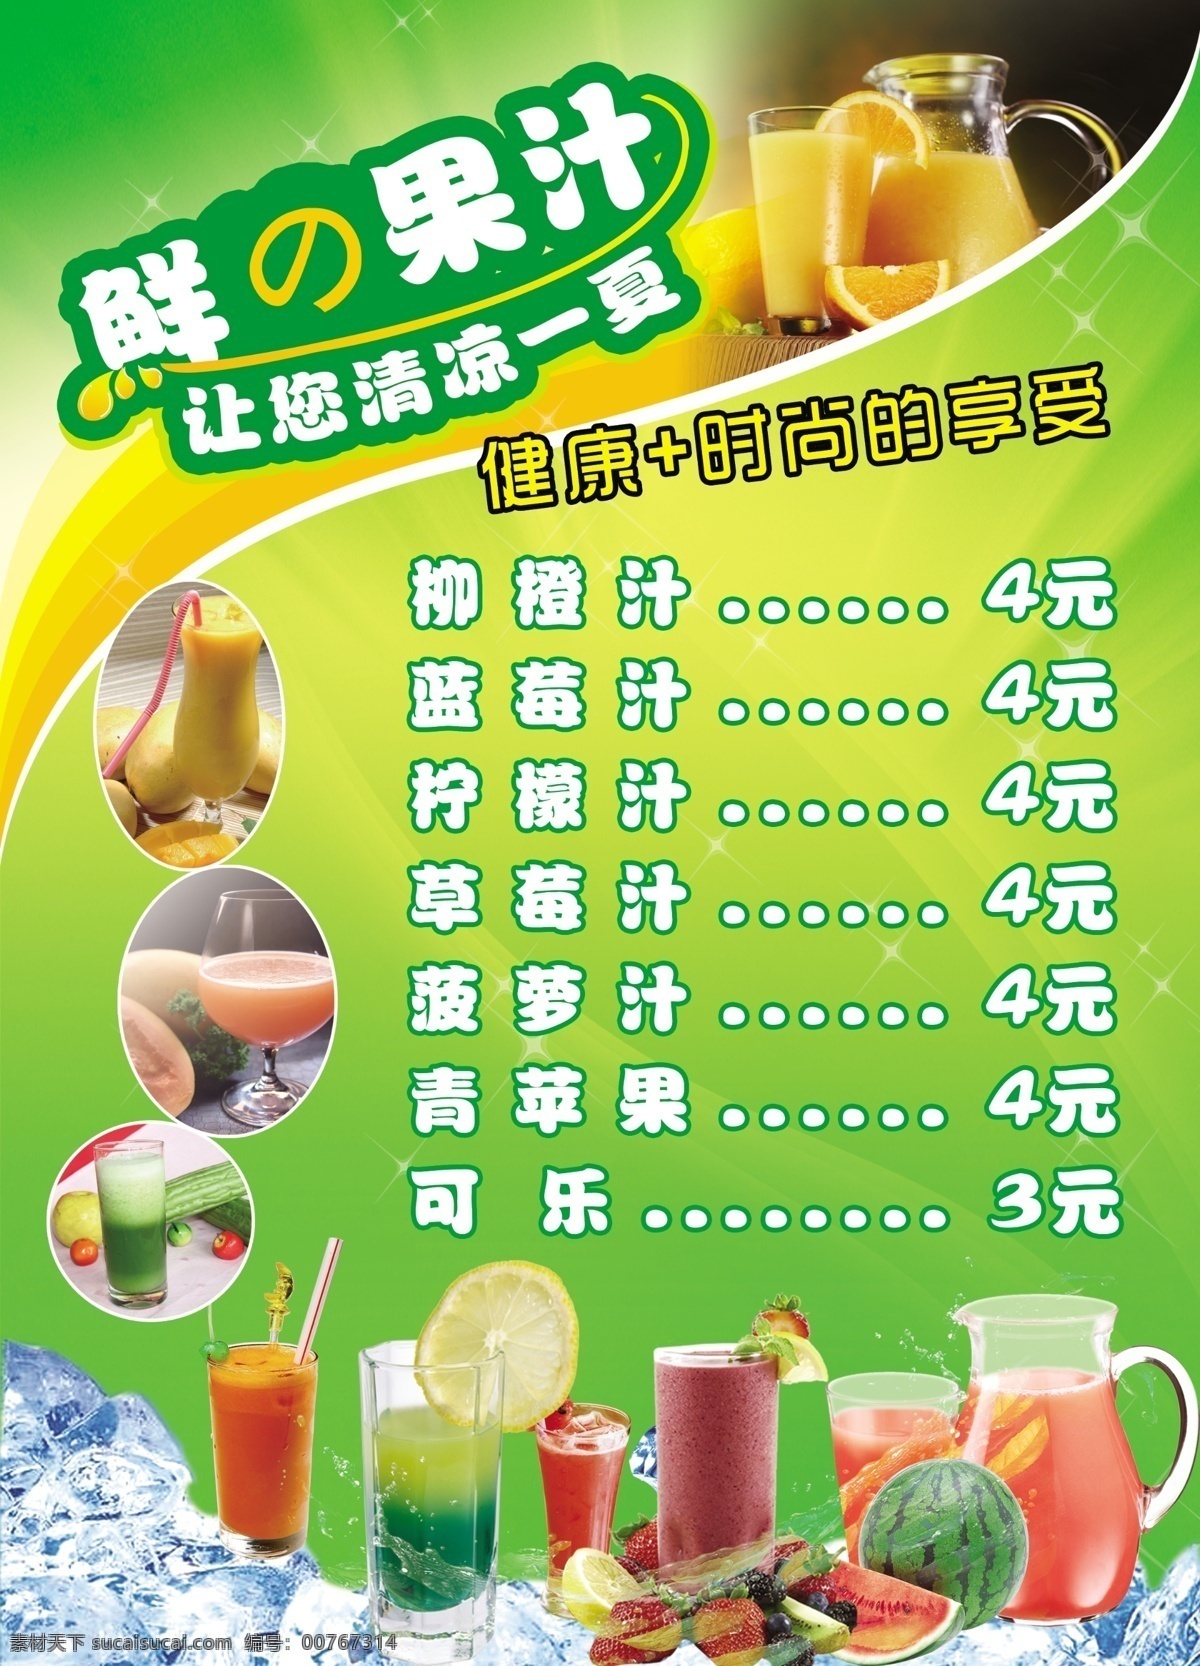 鲜果汁菜单 价目表 果汁菜单 果汁价目表 绿色背景 绿色果汁 饮料图片 果汁图片 鲜榨果汁